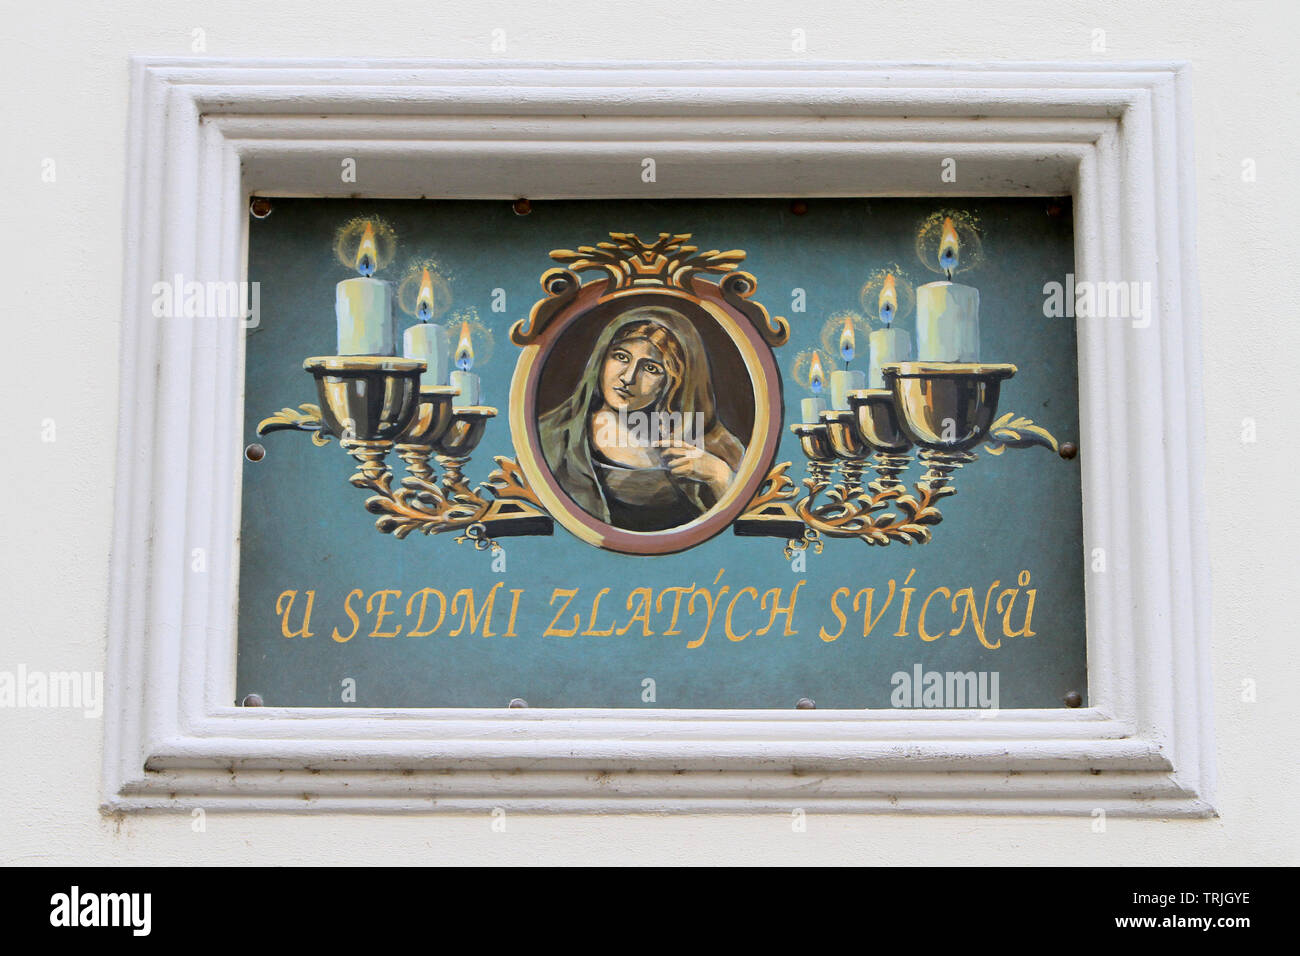 La placca : 'Les sept lampadari d'O'. "I sette candelabri d'oro". Praga. Repubblica ceca. Foto Stock